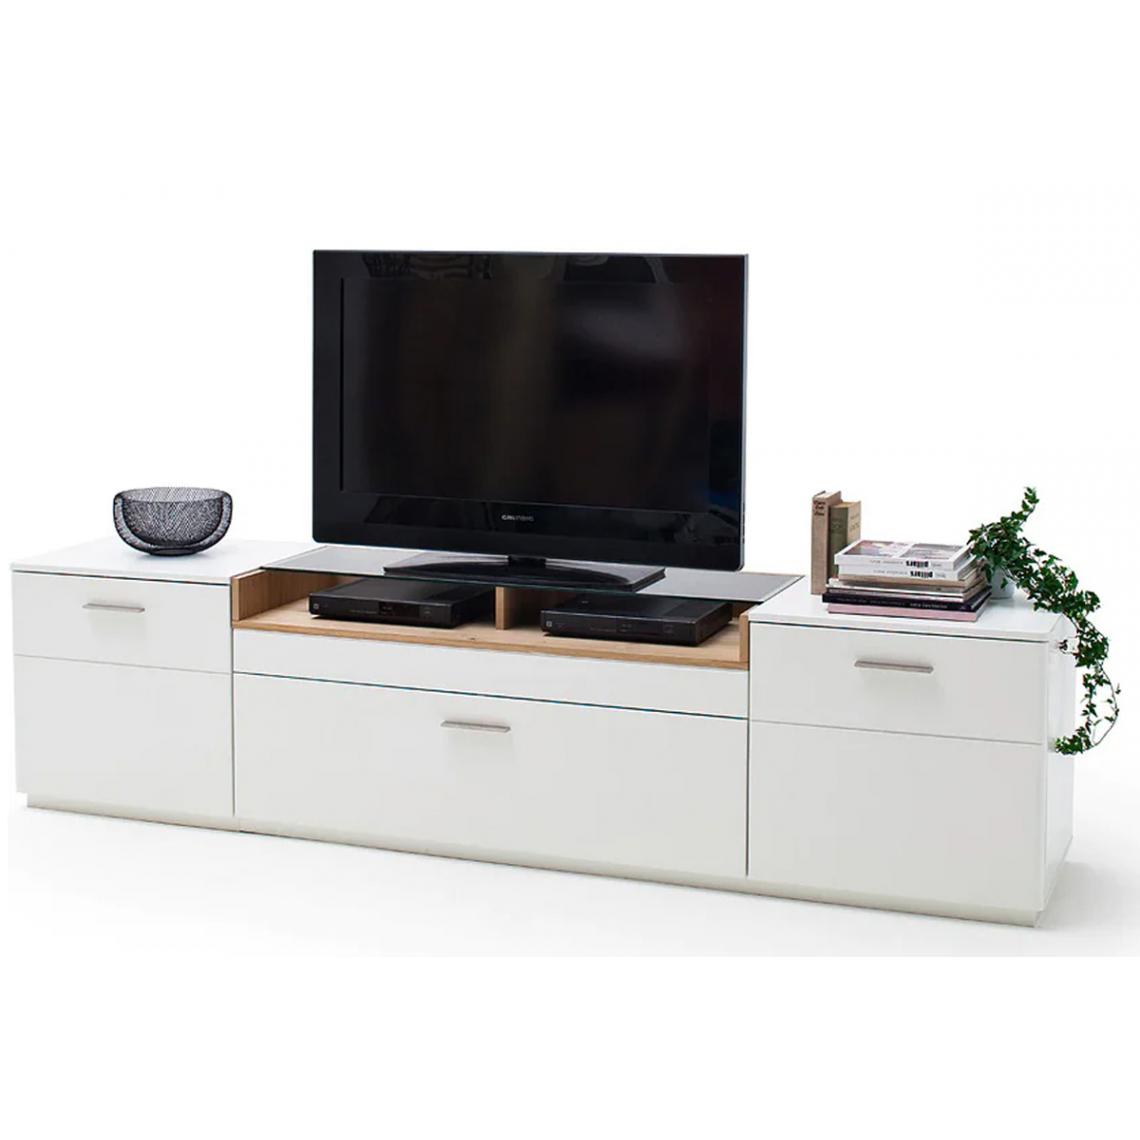 Pegane - Meuble TV finition laquée blanc mat et chêne - Longueur 240 x Hauteur 60 x Profondeur 50 cm - Meubles TV, Hi-Fi